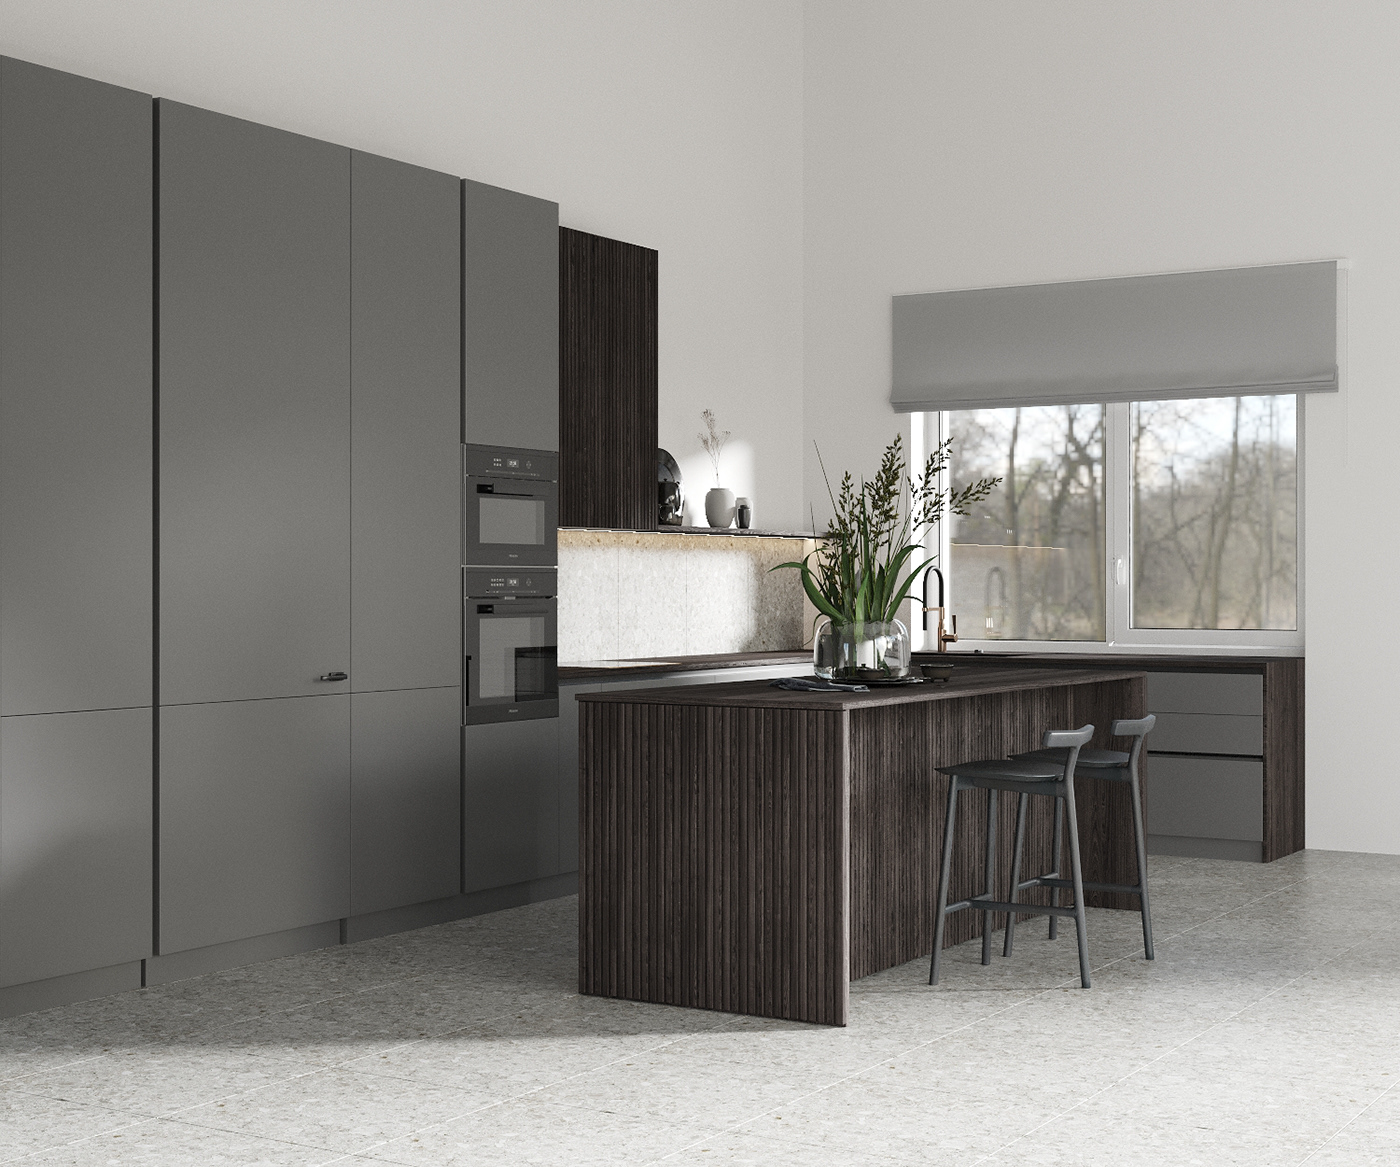 3ds max Render interior design  kitchen design visualization corona modern darkinterior dark kitchen juxtaposition